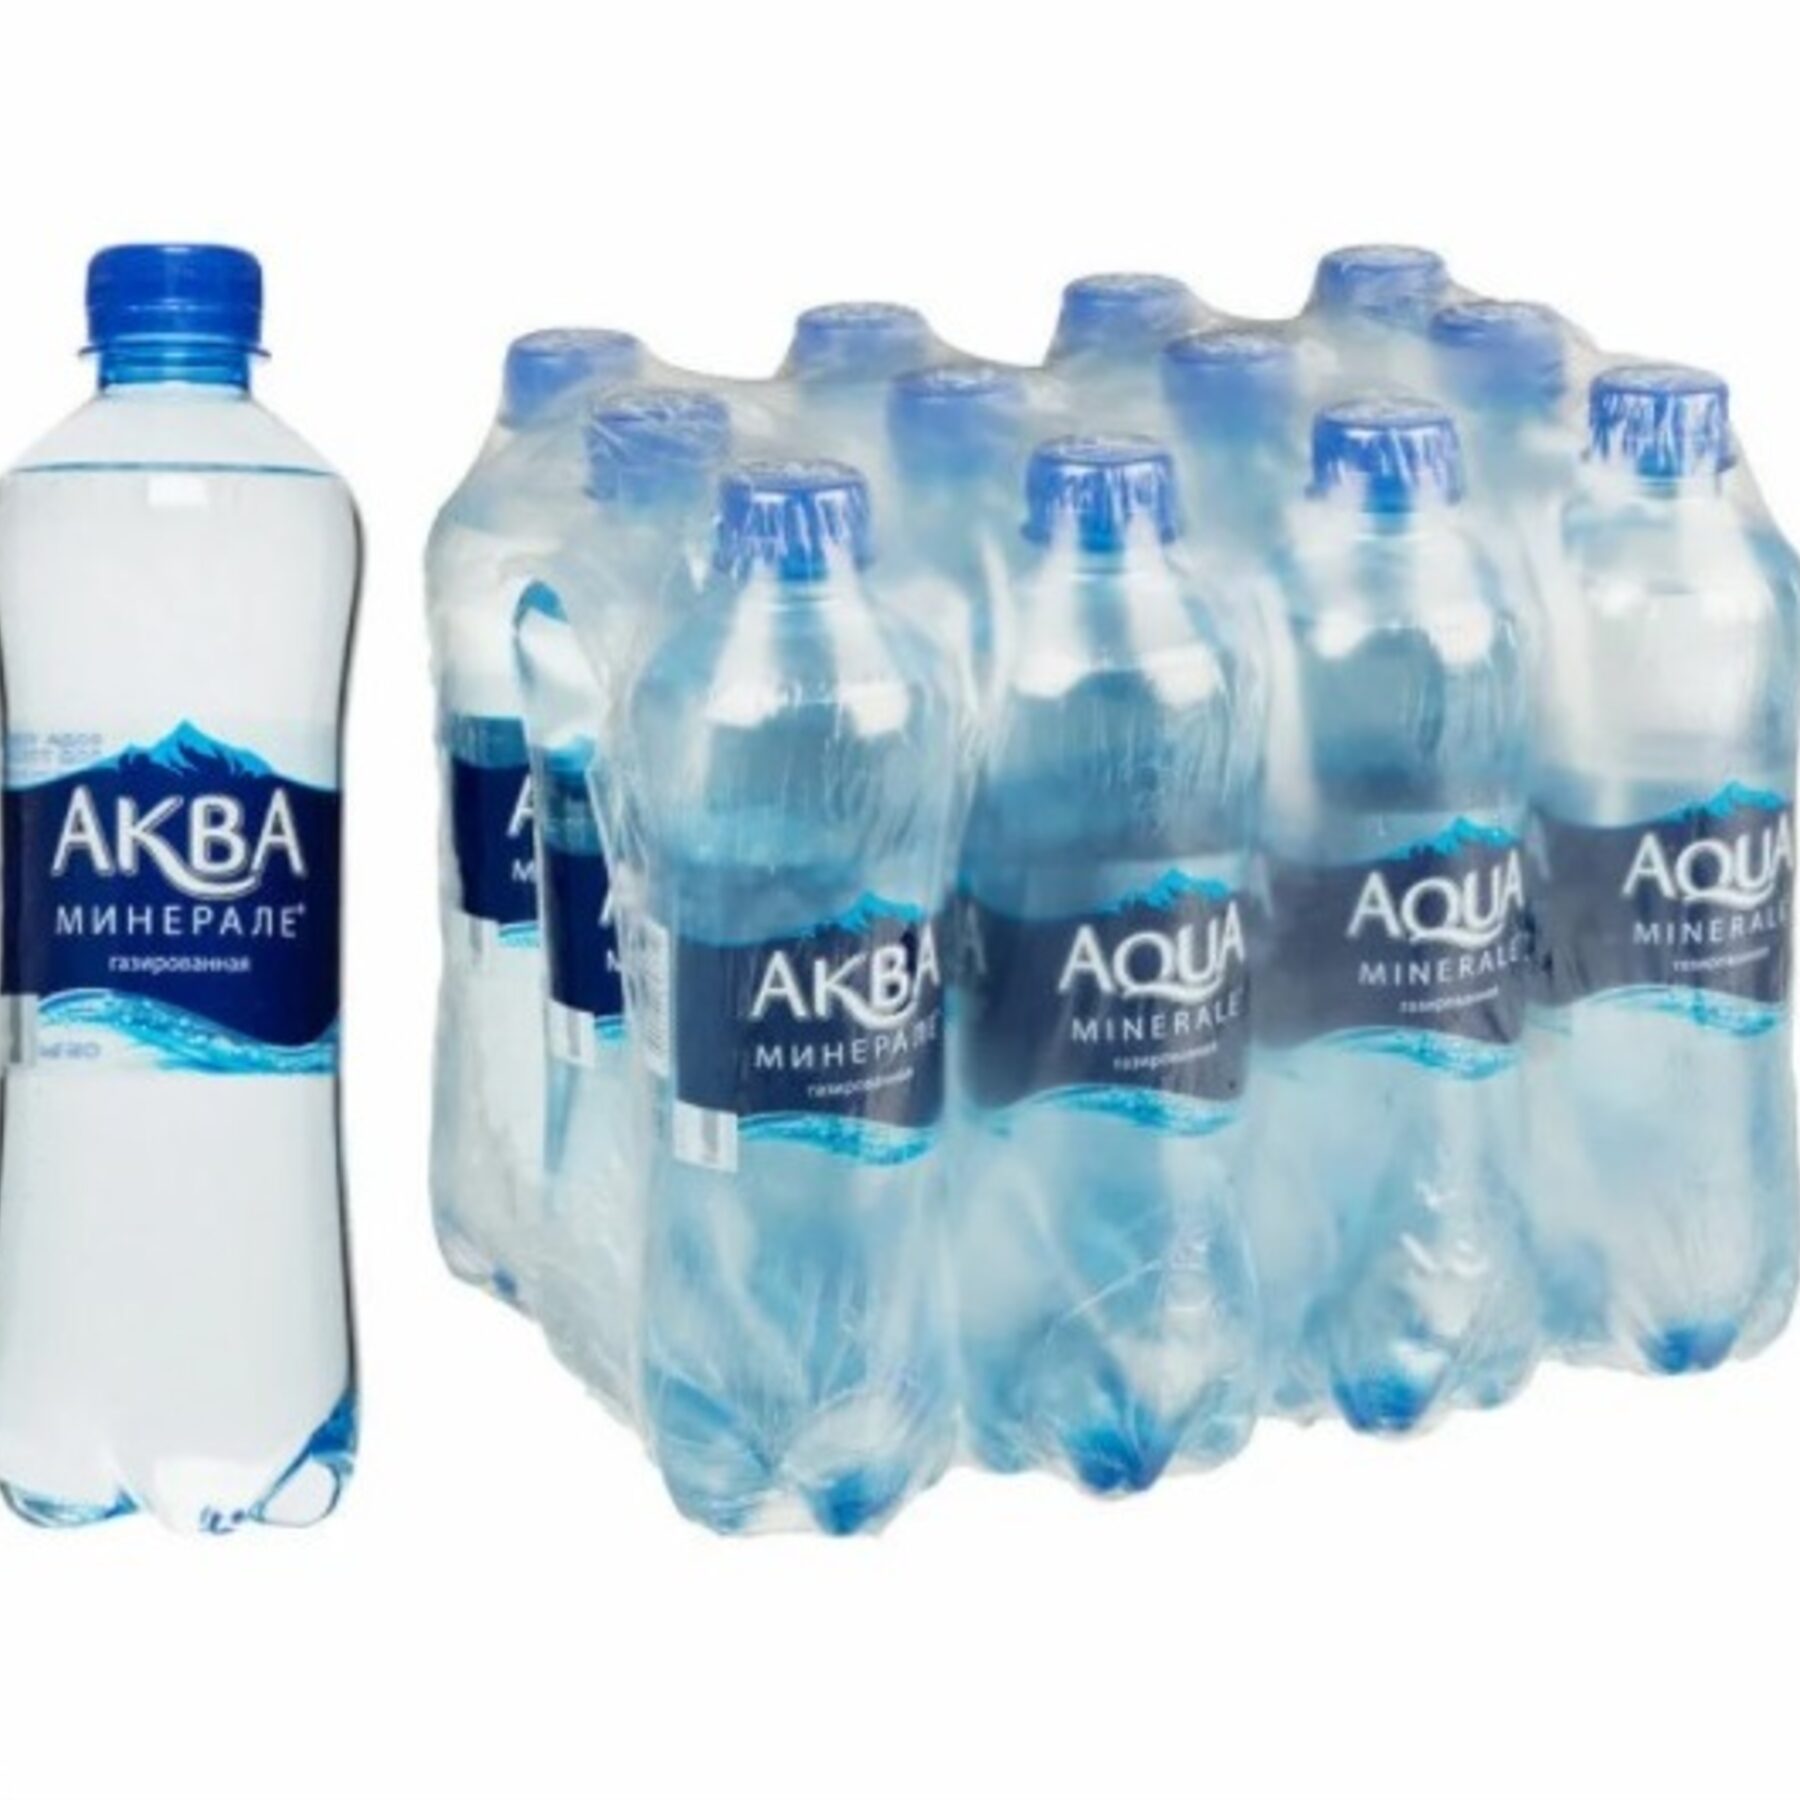 Вода 0.5 газированная. Aqua minerale вода питьевая ГАЗ 0.5Л. Аква минер ГАЗ 0,5. Aqua minerale вода 0.5. Вода Аква Минерале газированная 0,5л.